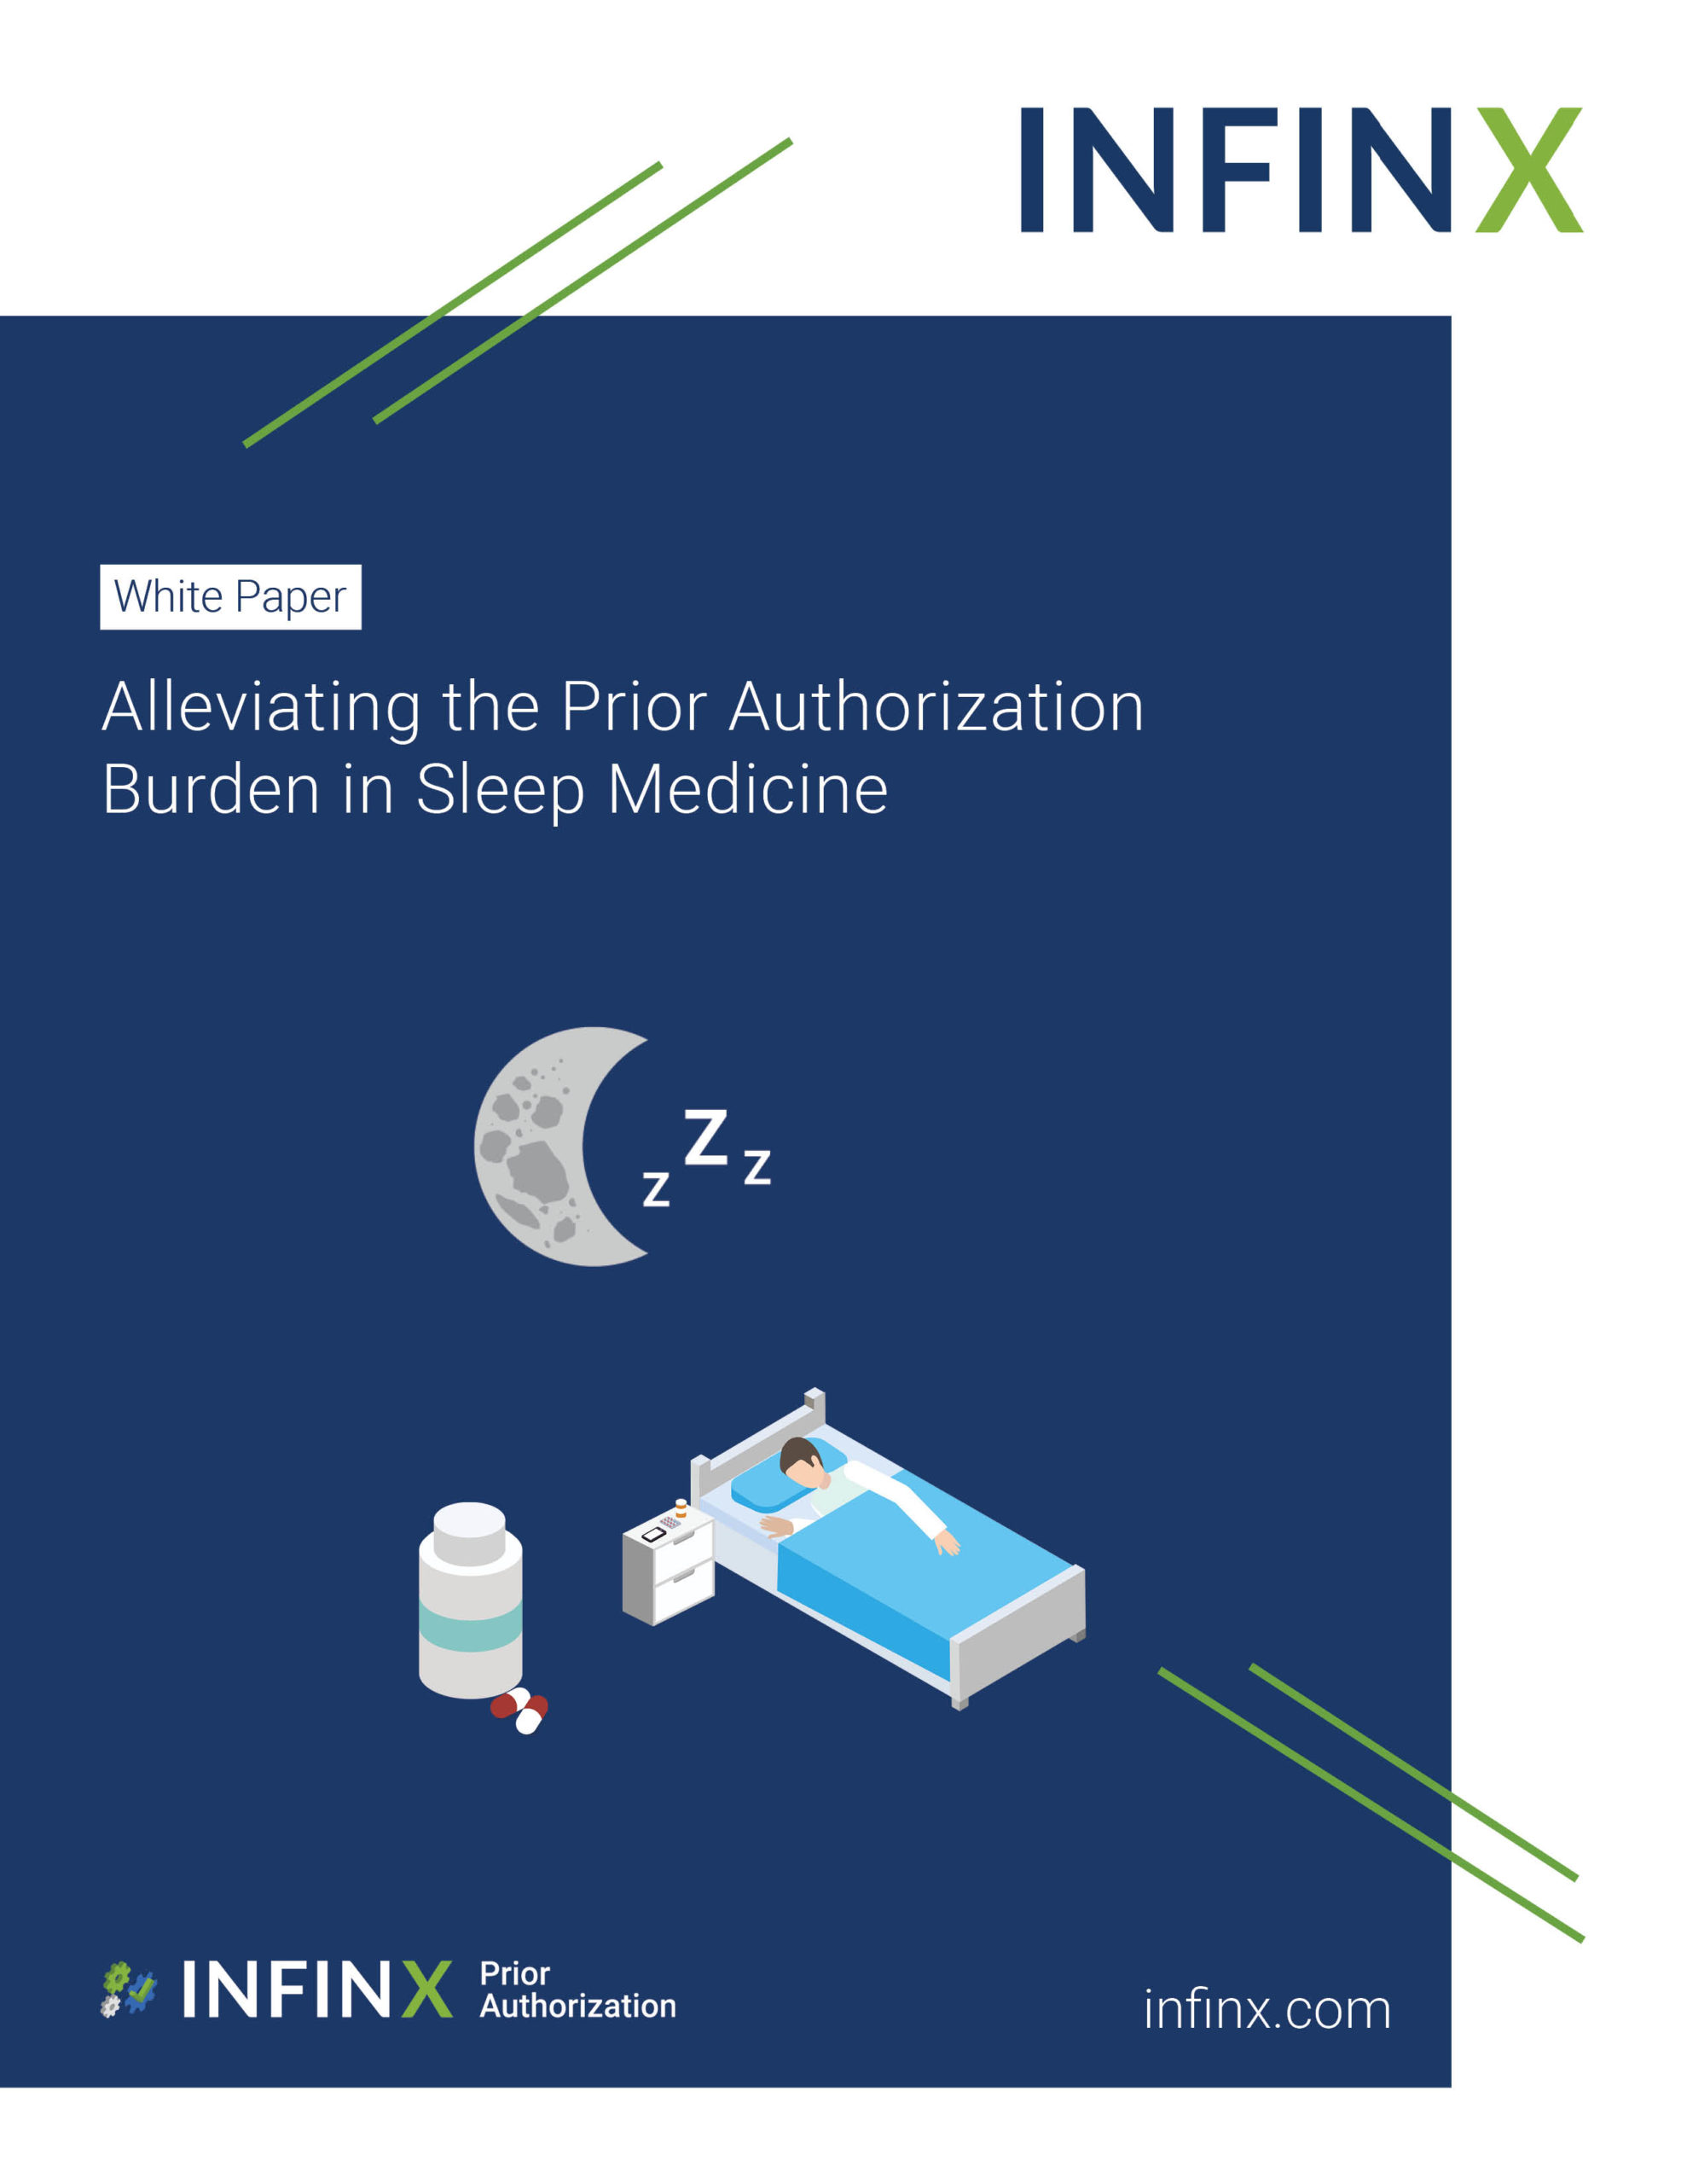 Infinx - White Paper - Alleviating the Prior Authorization Burden in Sleep Medicine June2021 1